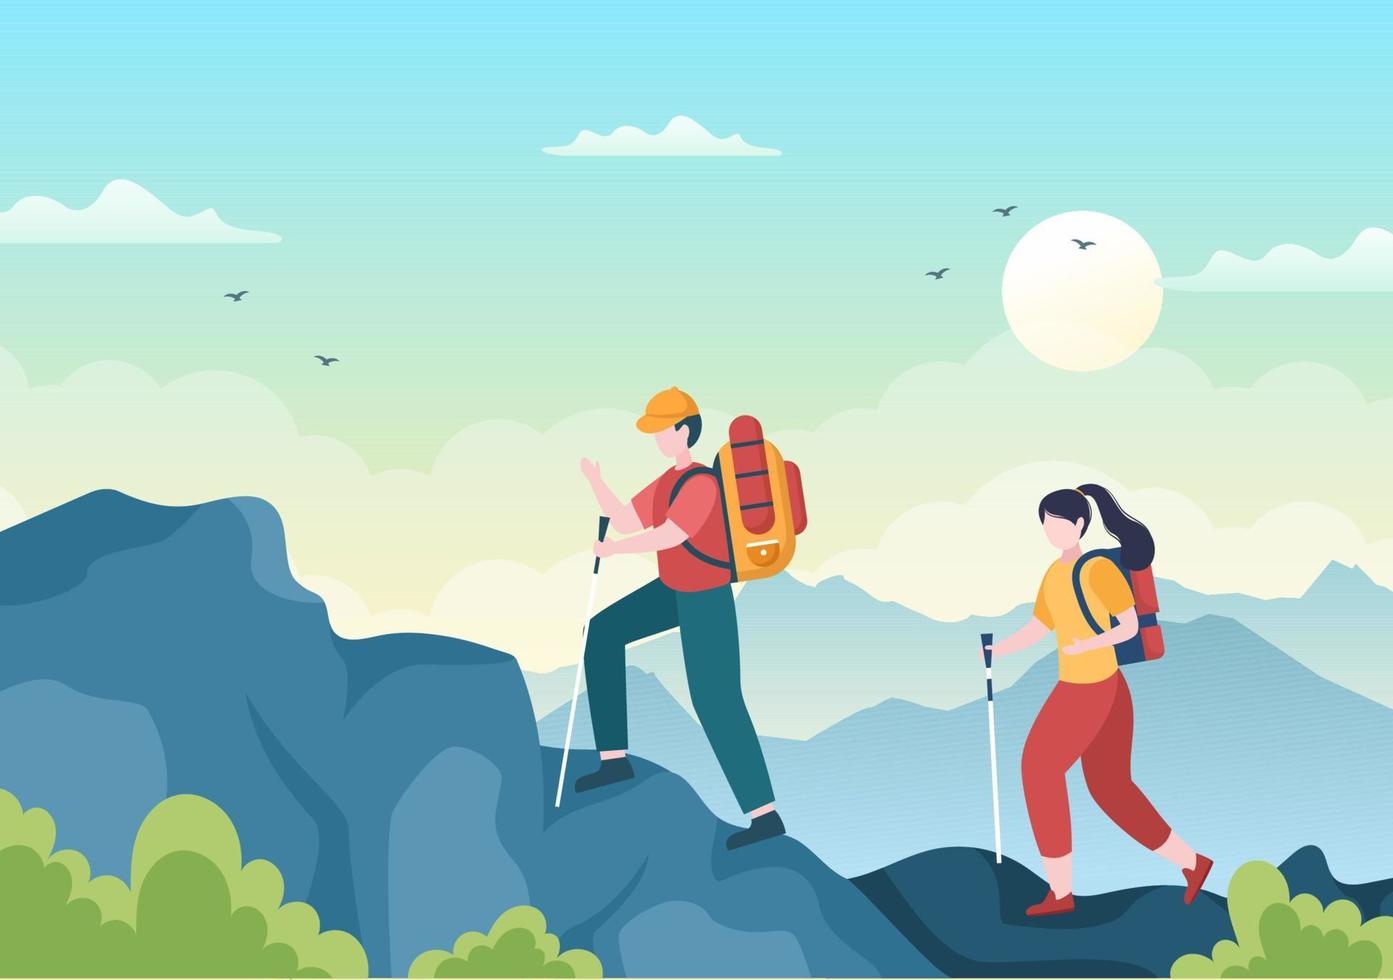 passeio de aventura sobre o tema de escalada, trekking, caminhadas, caminhadas ou férias com vista para a floresta e a montanha em ilustração de cartaz de fundo de natureza plana vetor